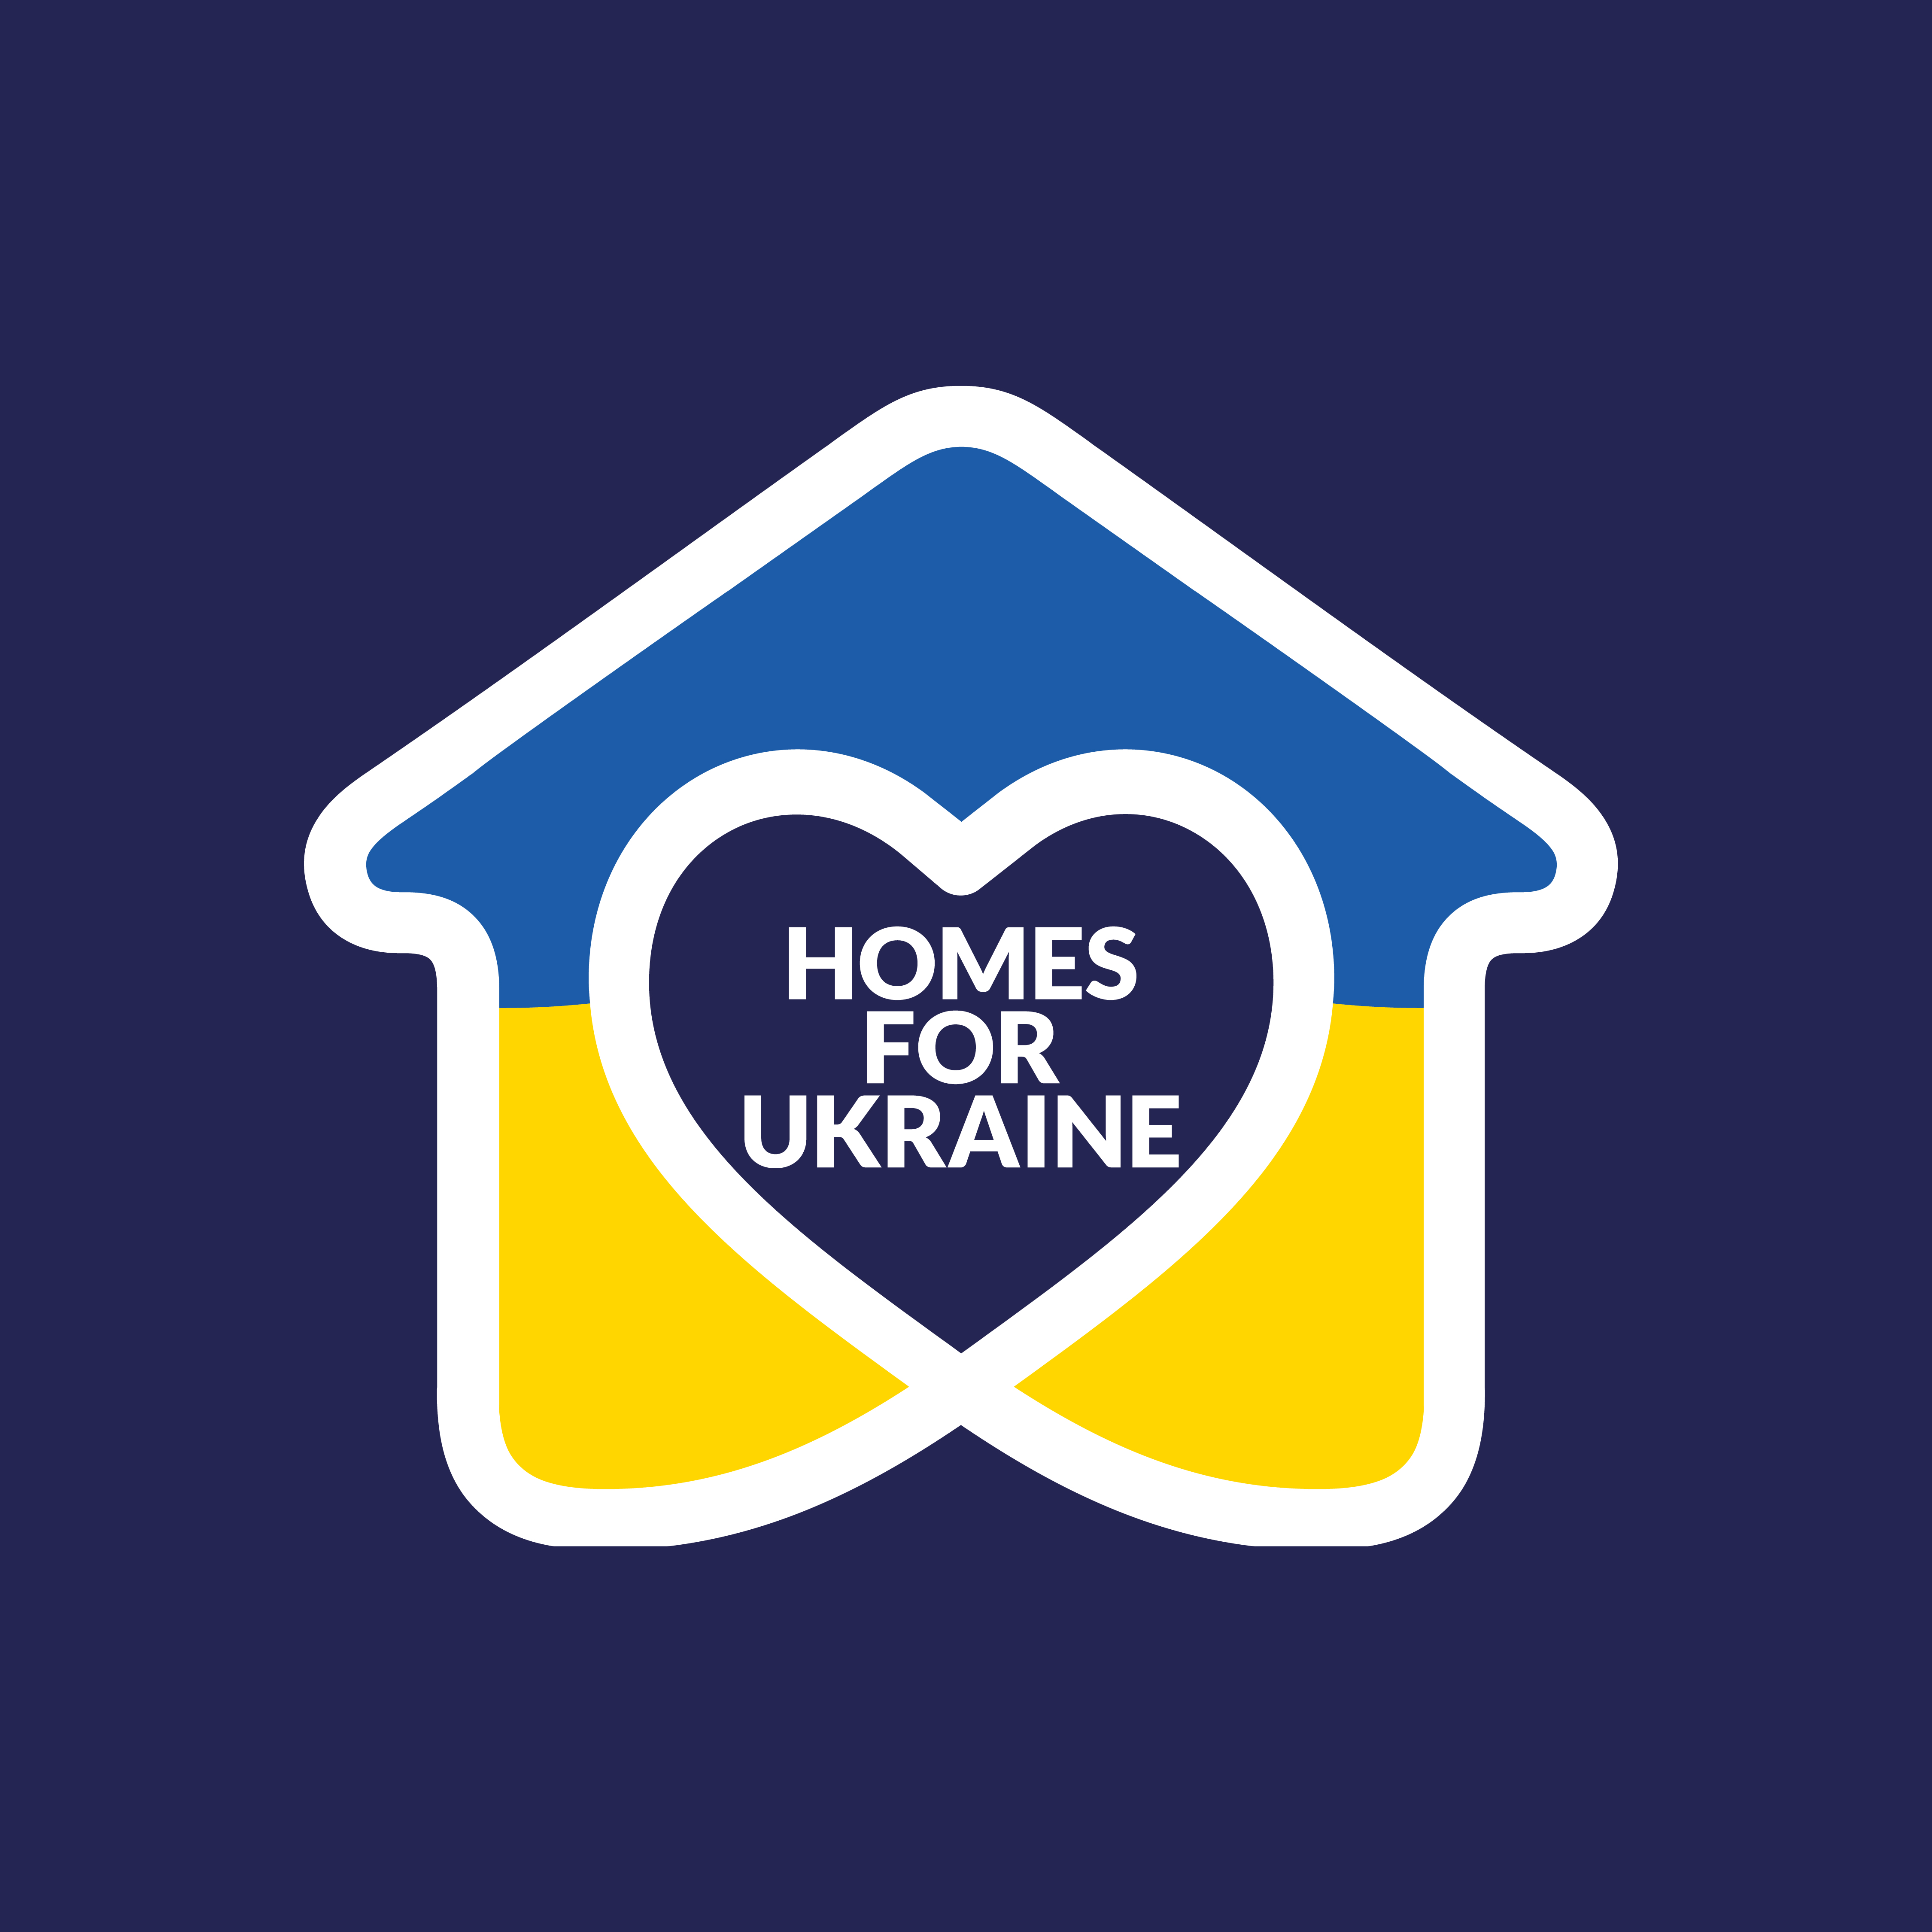 Homes for ukraine logo homes for ukraine logo blue